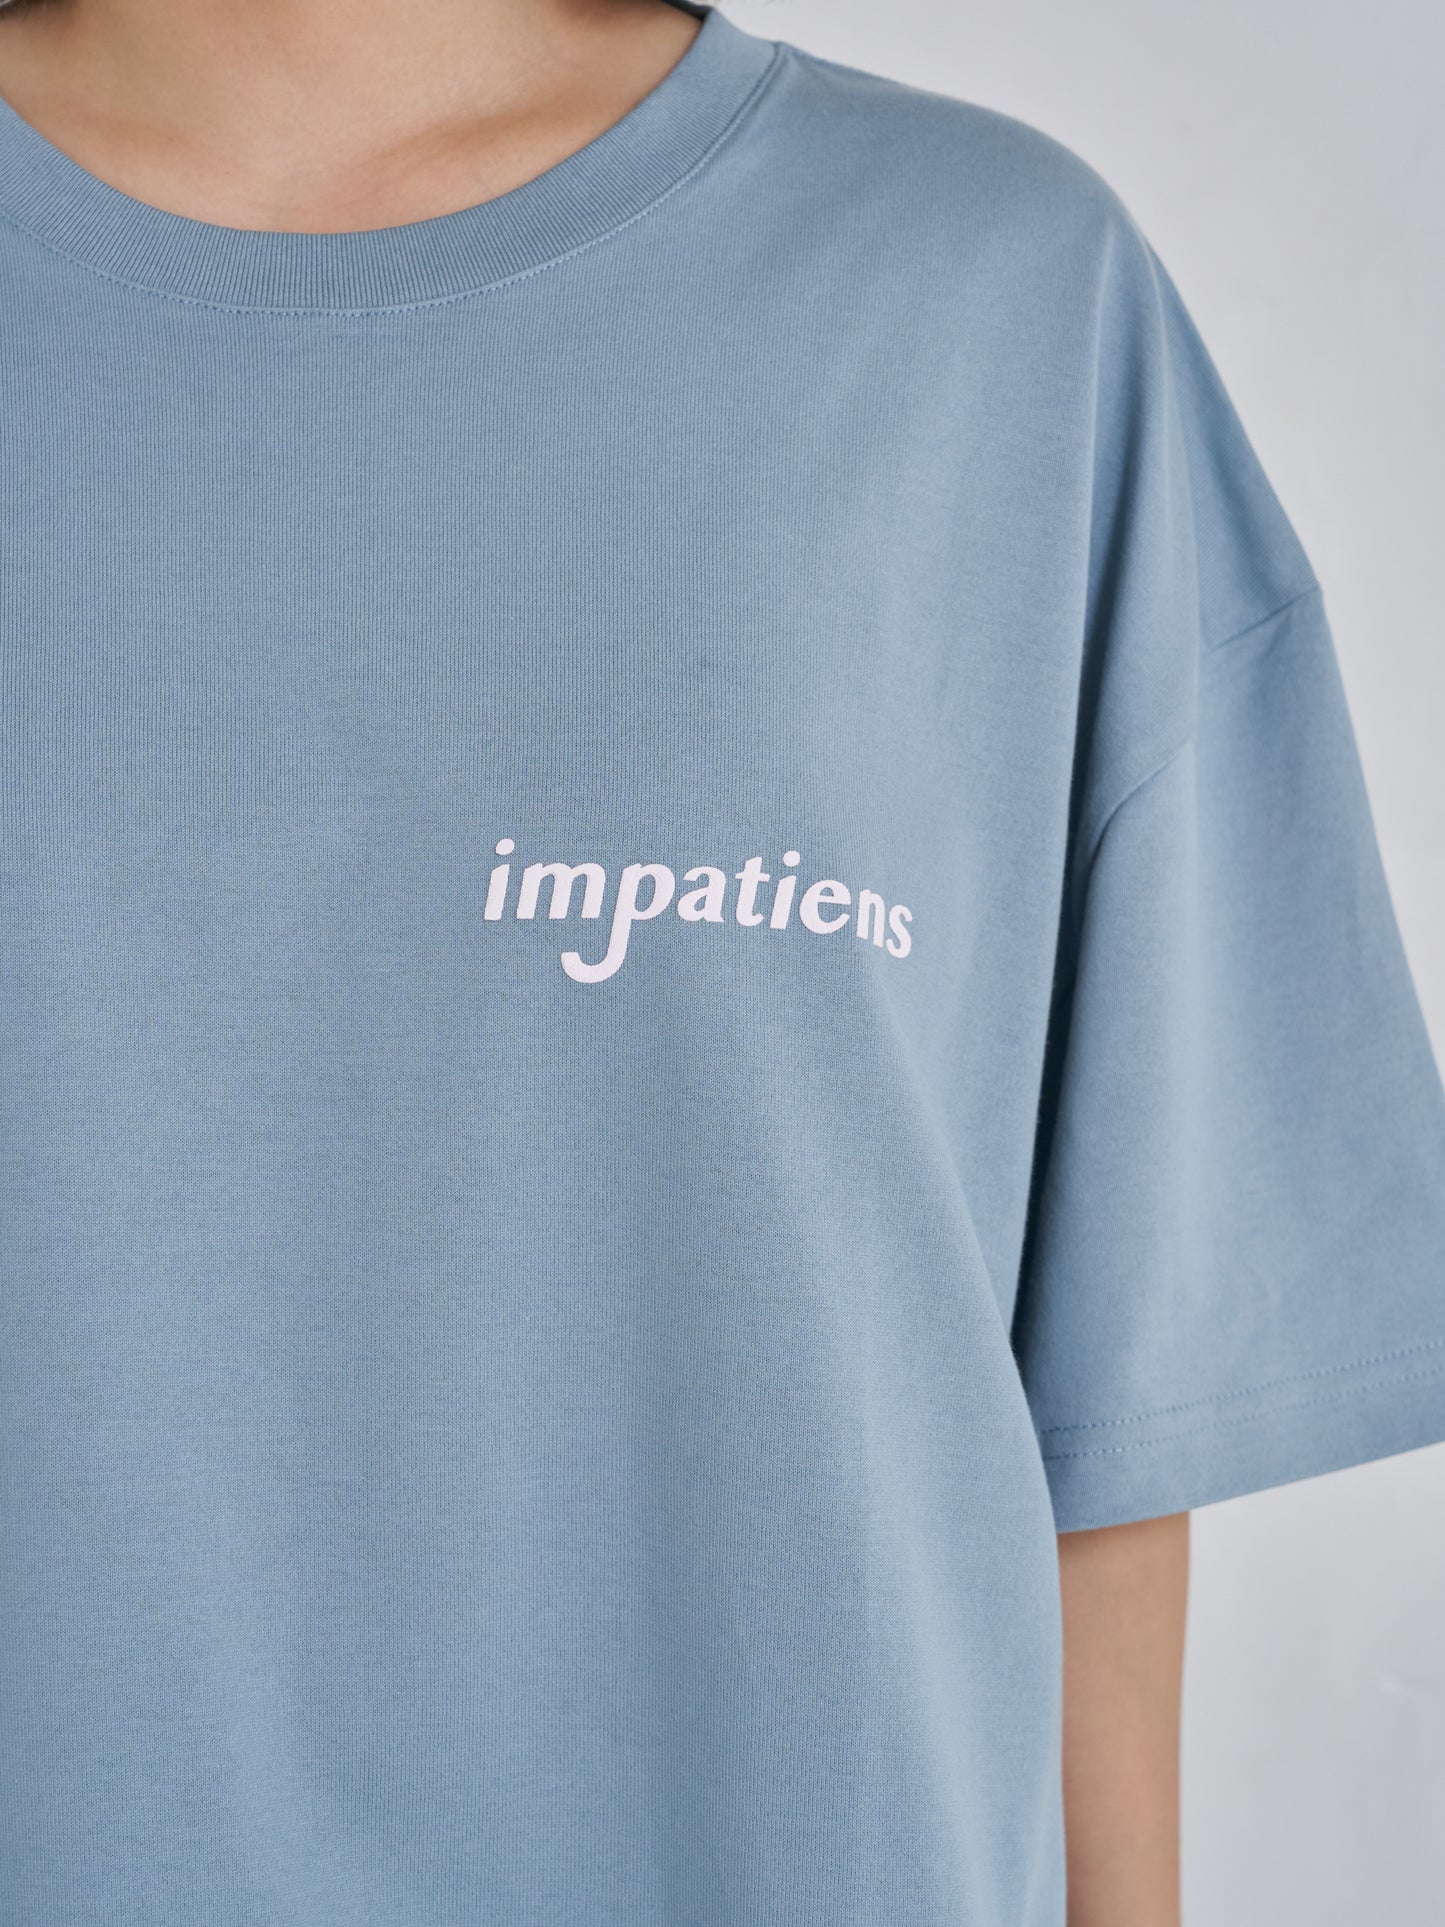 impatiens T-shirt